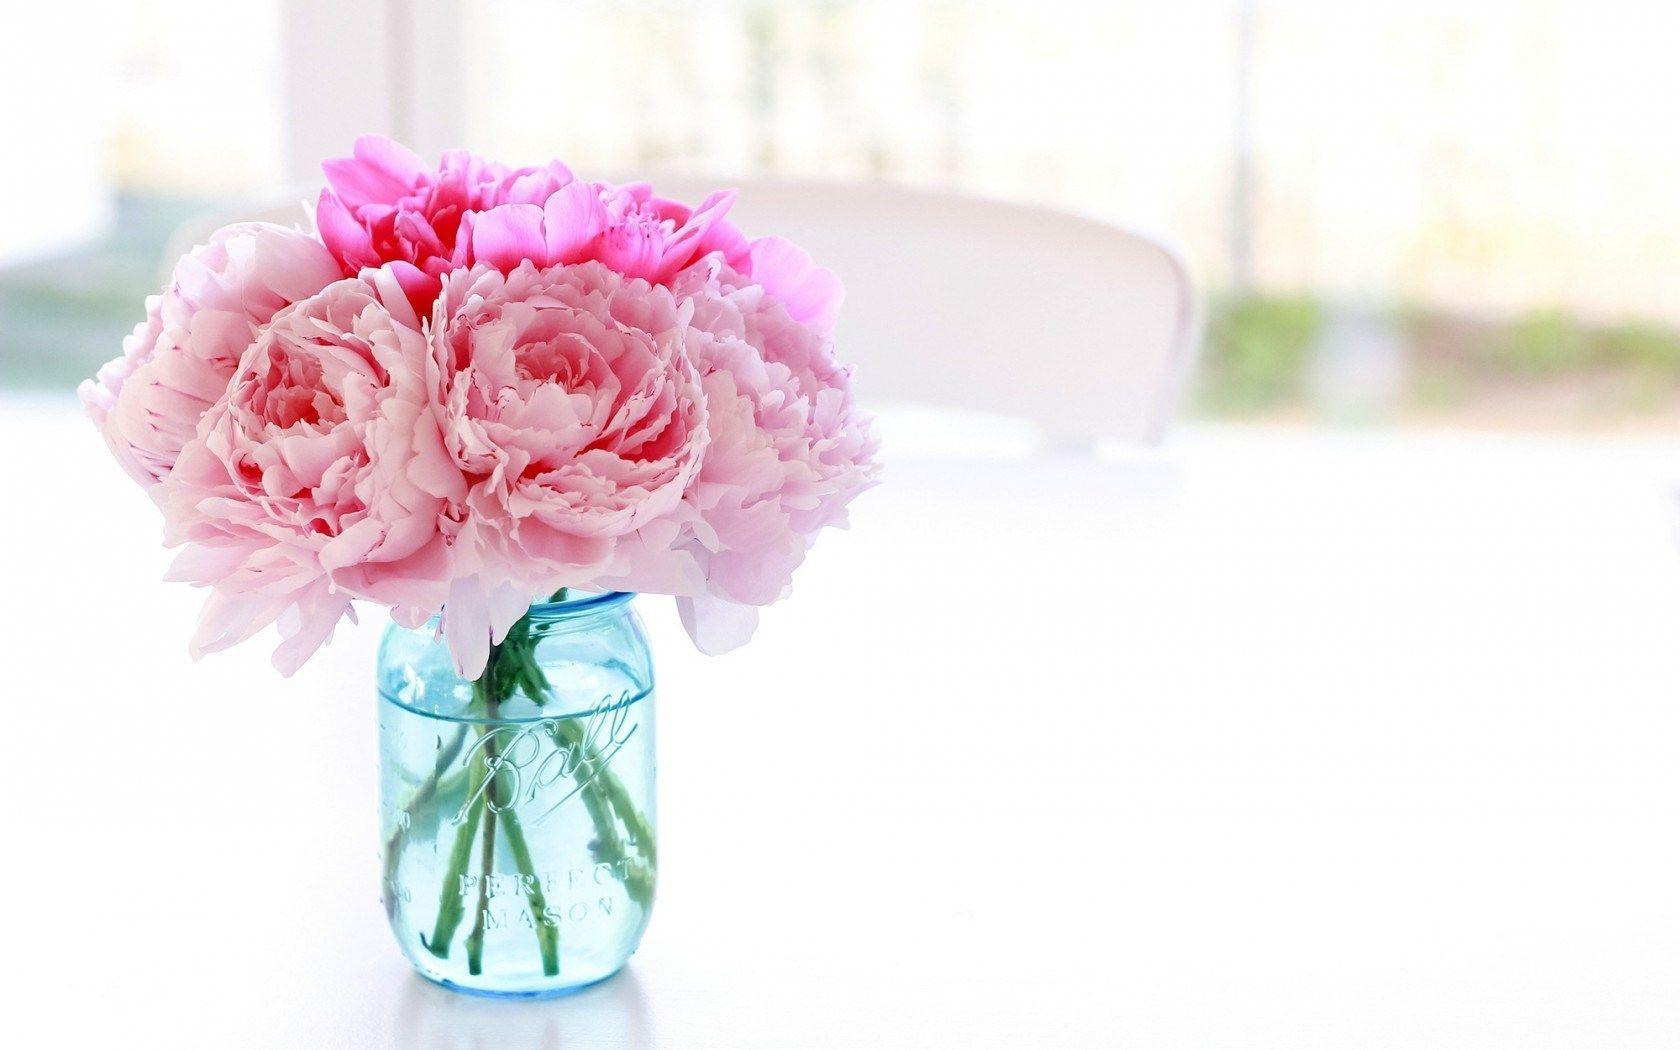 Pink Peonies Flowers in a Vase Wallpaper. HD Desktop Background